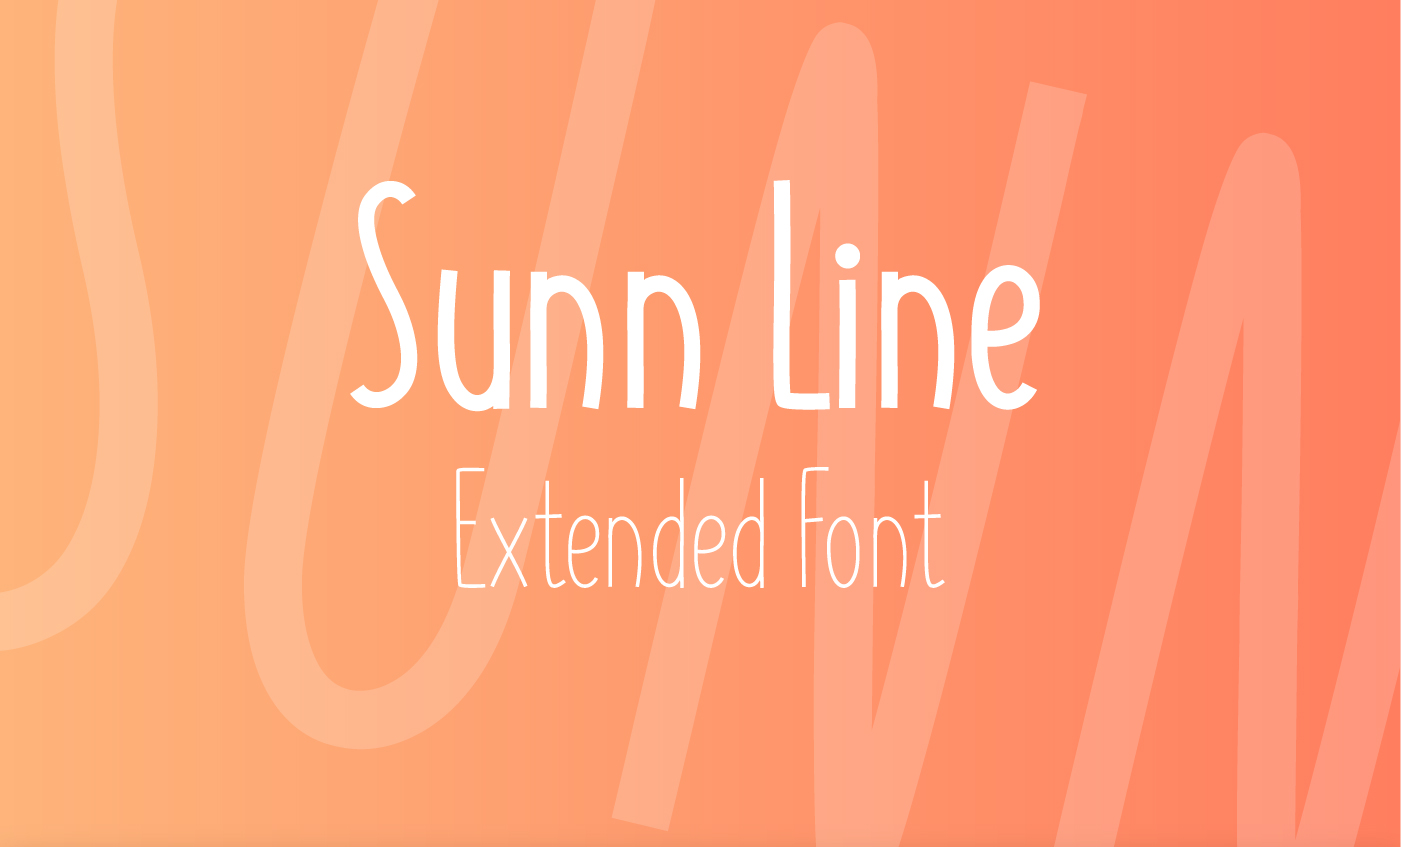 SUNN Line Extended Font